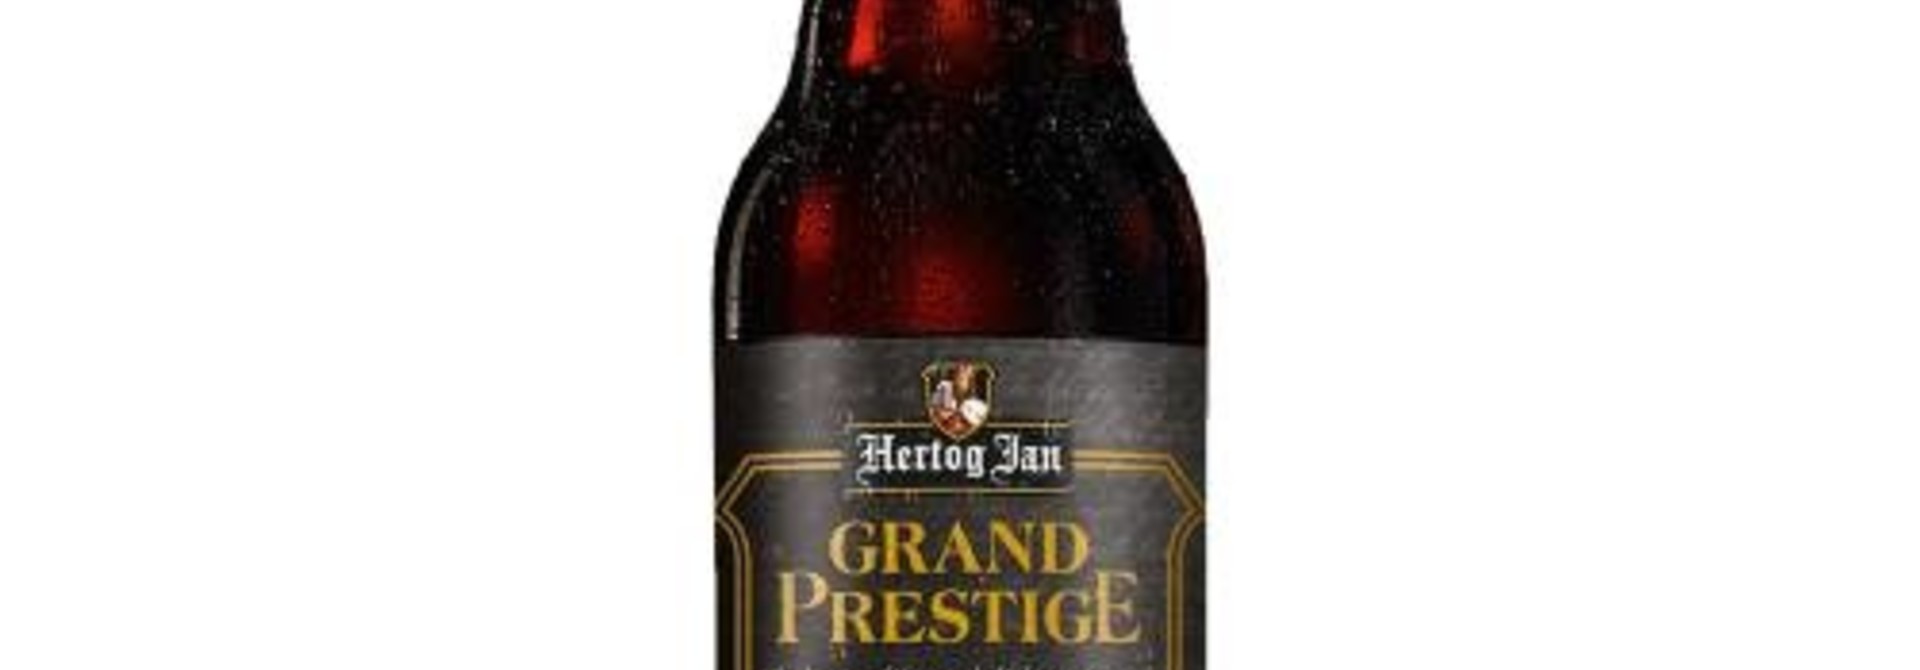 Hertog Jan Grand Prestige 33cl 10%